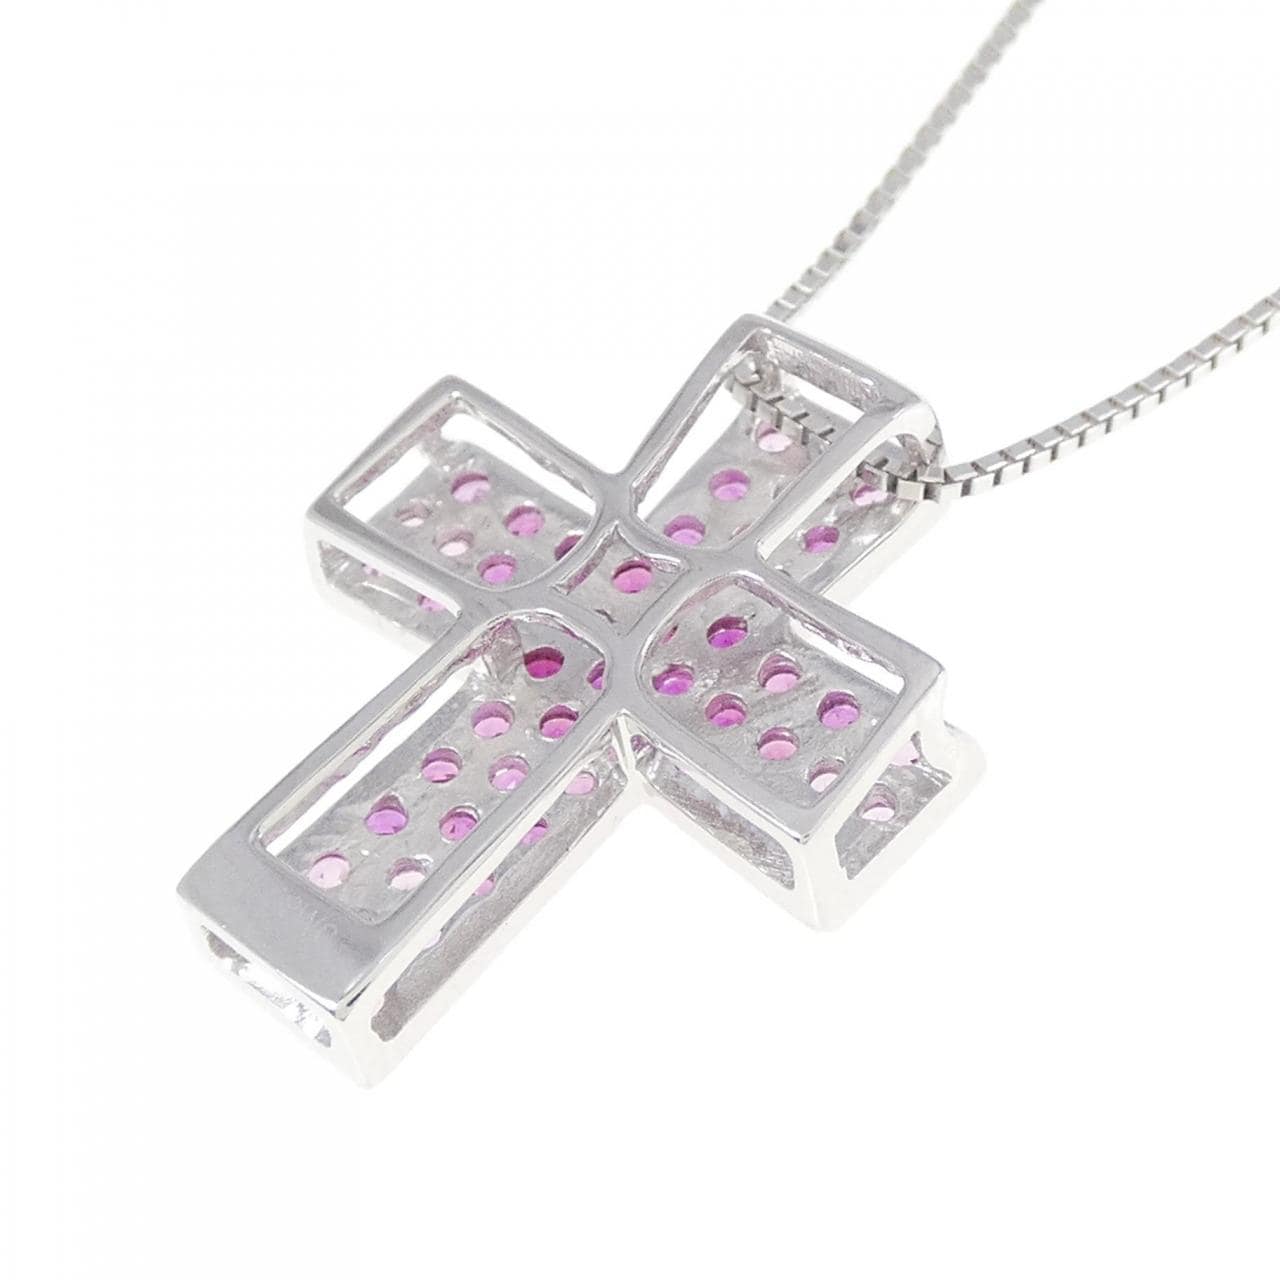 K18WG cross ruby necklace